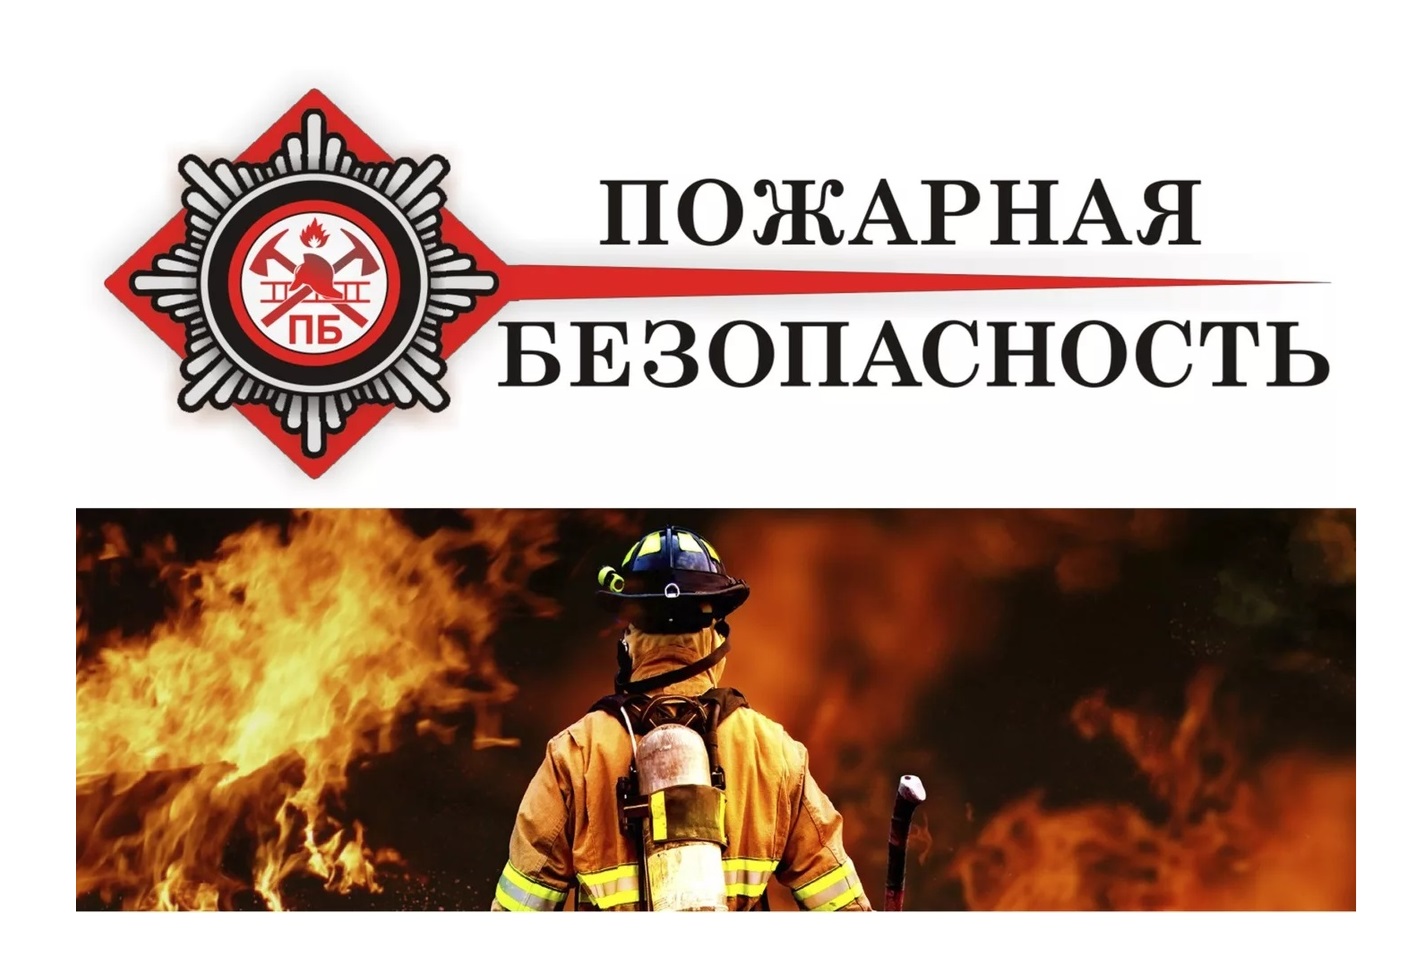 Компании по пожарной безопасности. Пожарная безопастность. Пожар няябезопасноссть. НПА пожарная безопасность. Пожарная безопасность картинки.